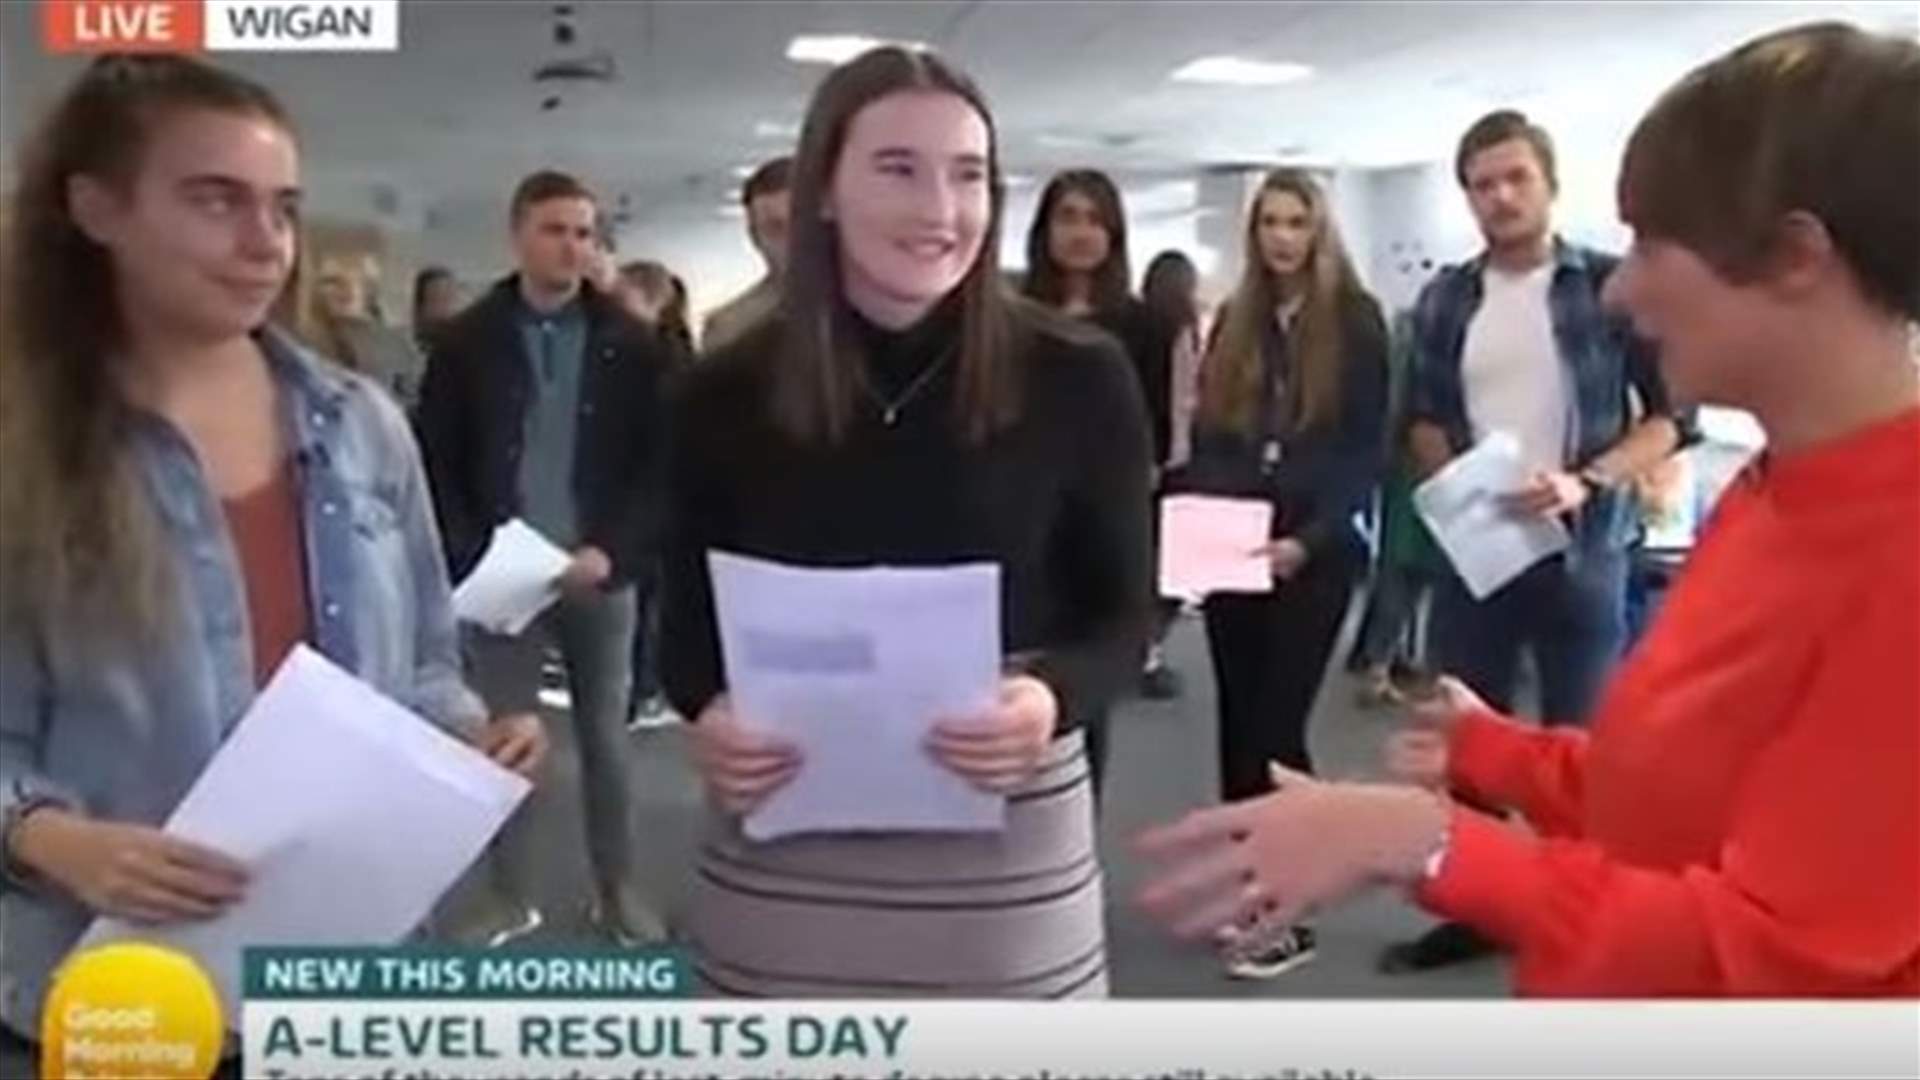 بالفيديو - تلميذ يقوم بحركة مفاجئة مباشرة على الهواء بعد معرفة نتائج امتحانات الدخول!